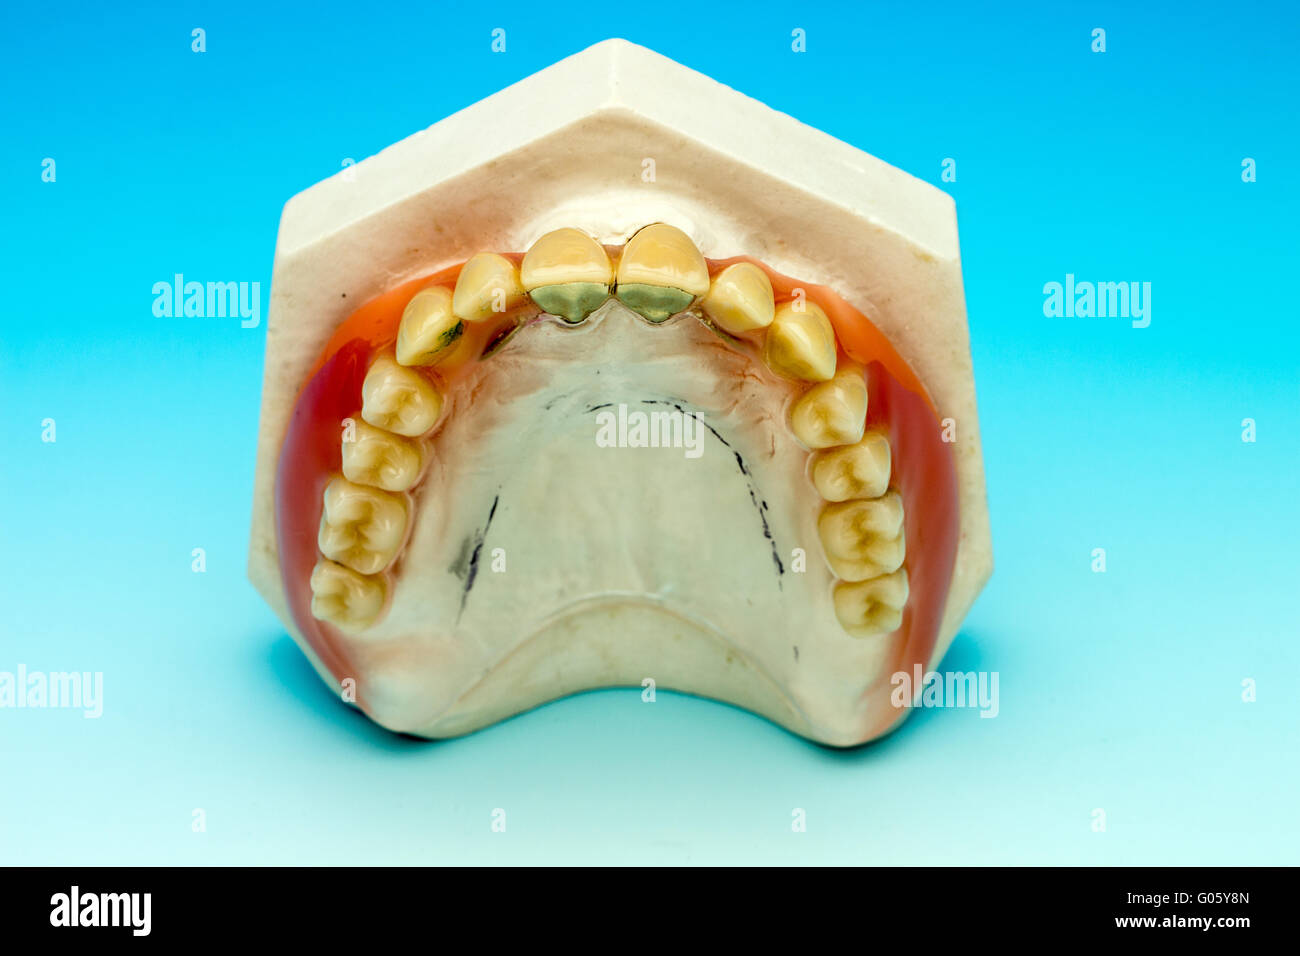 Maxillary denture tablets on Stock Photo